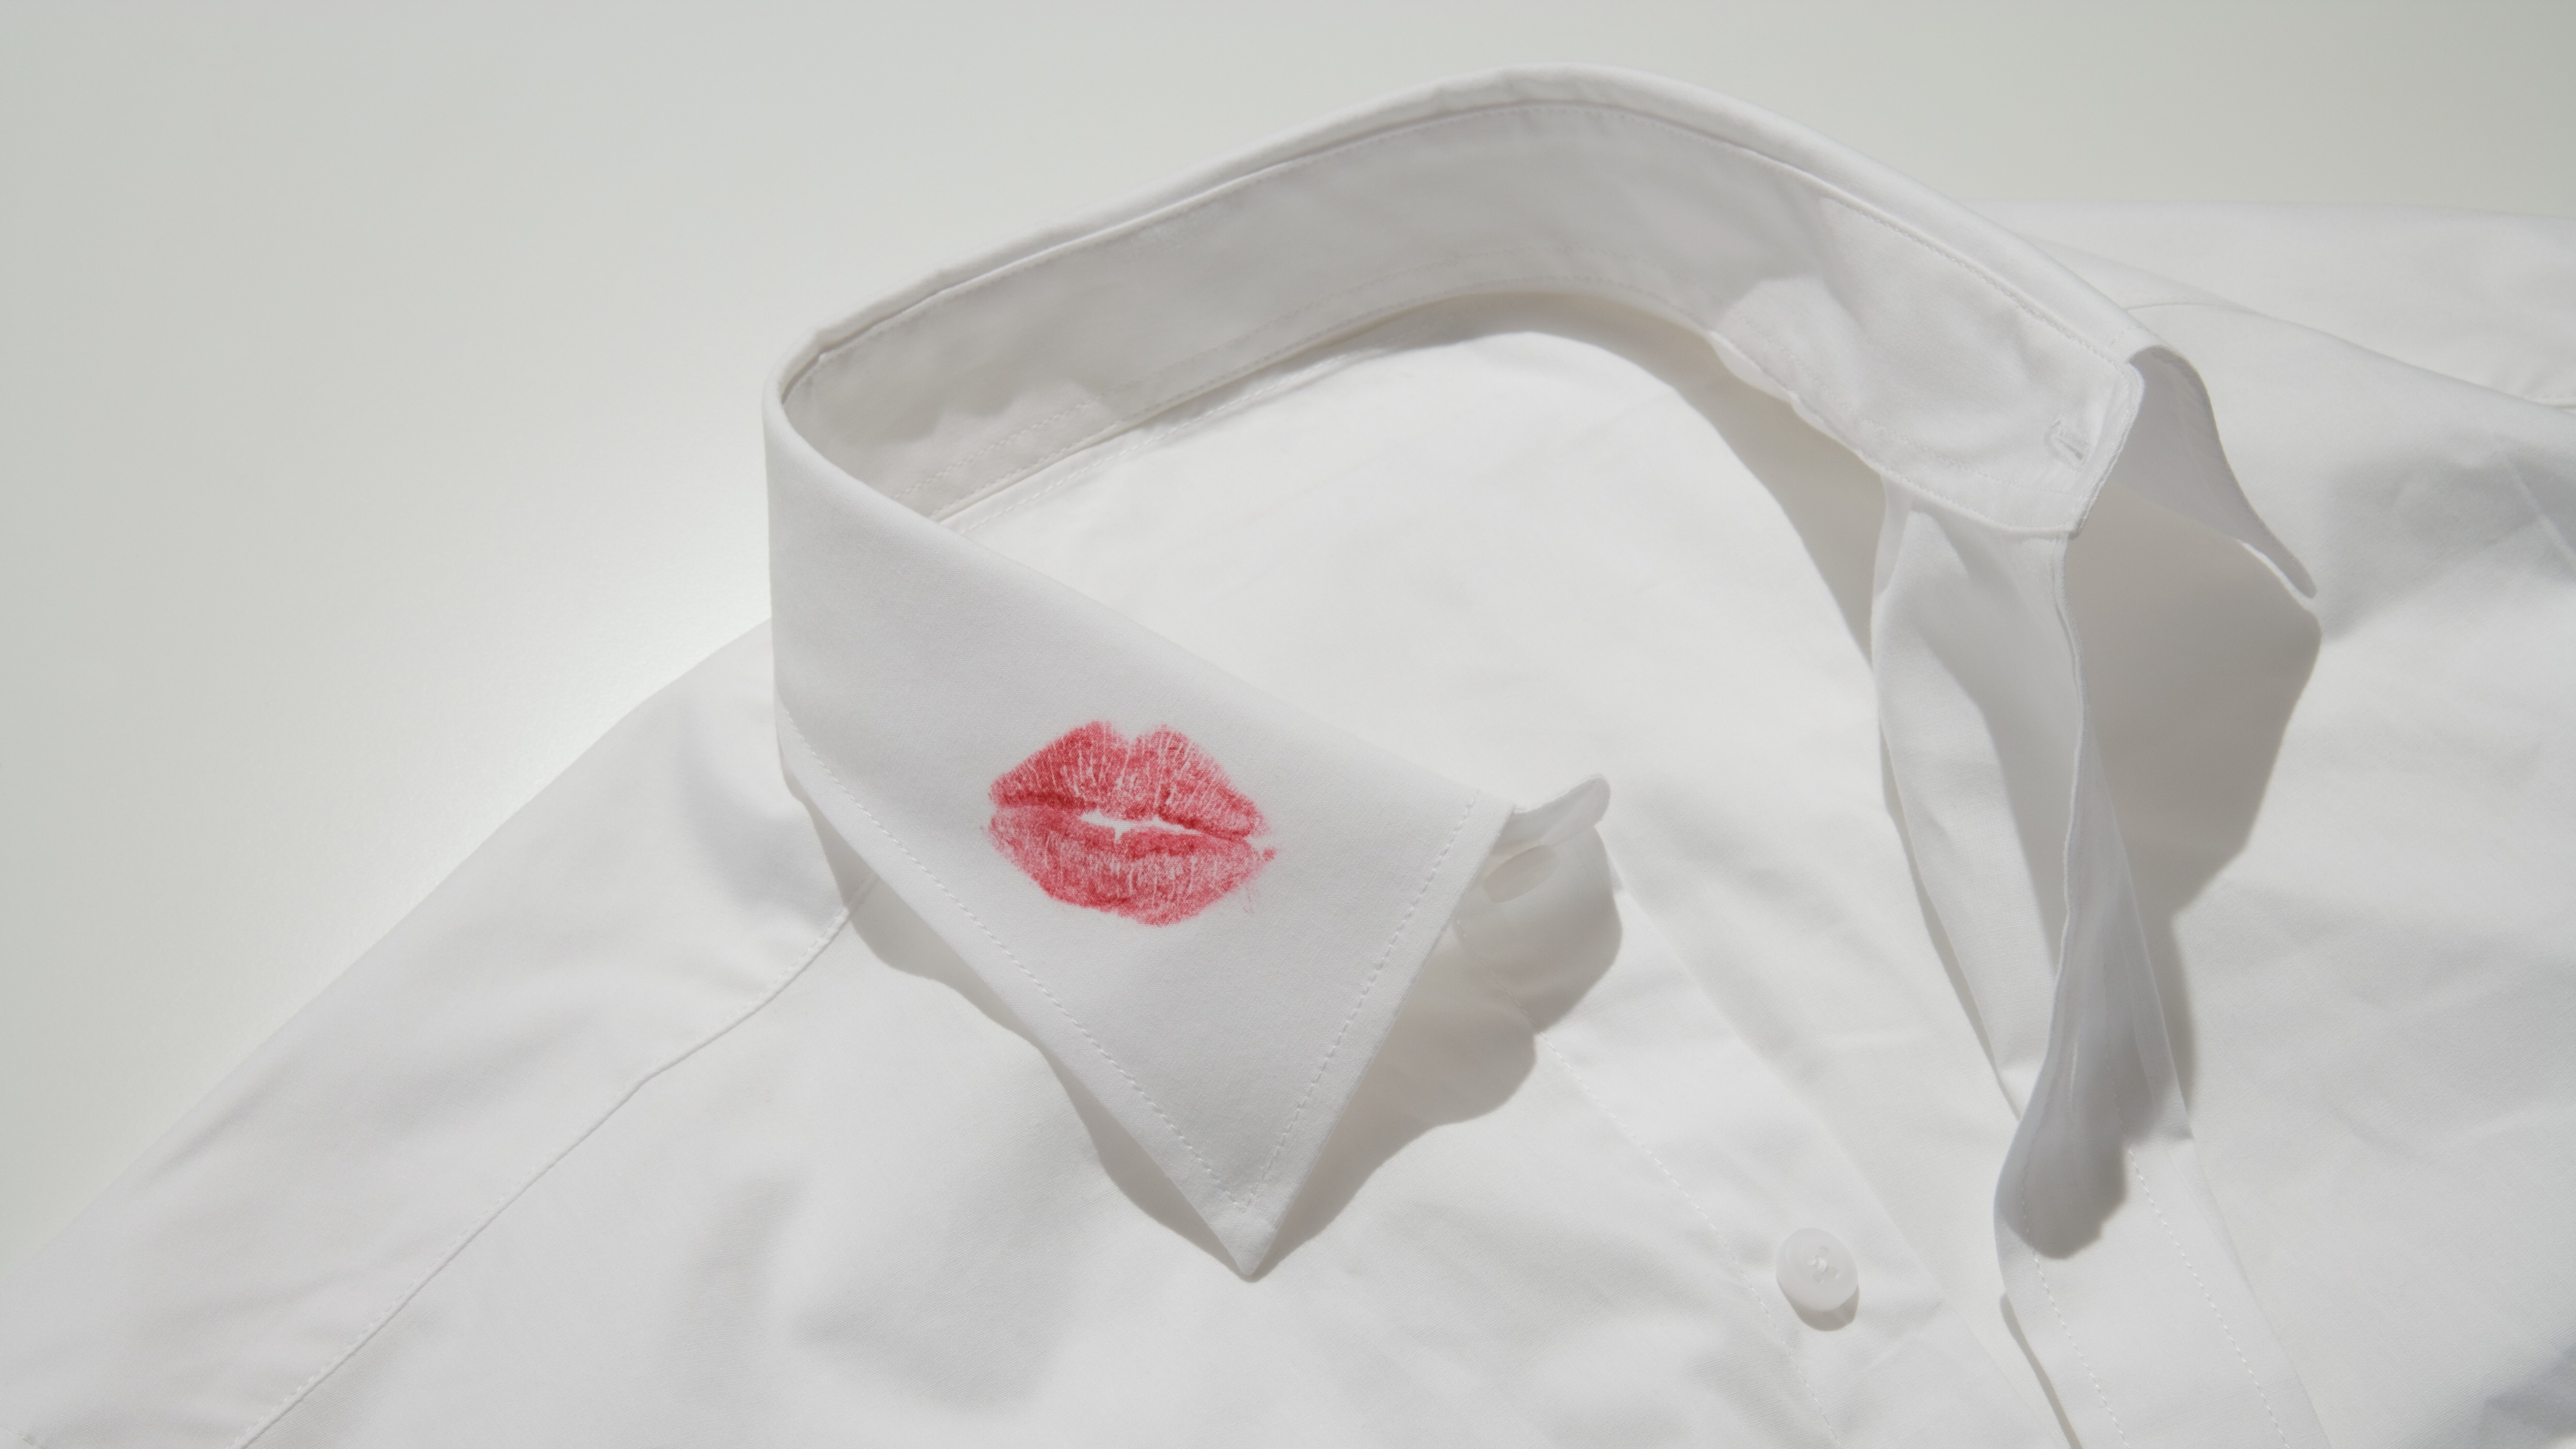 Gyanútlan férfiak pólóját csókolgatja a hírhedt rúzsbandita